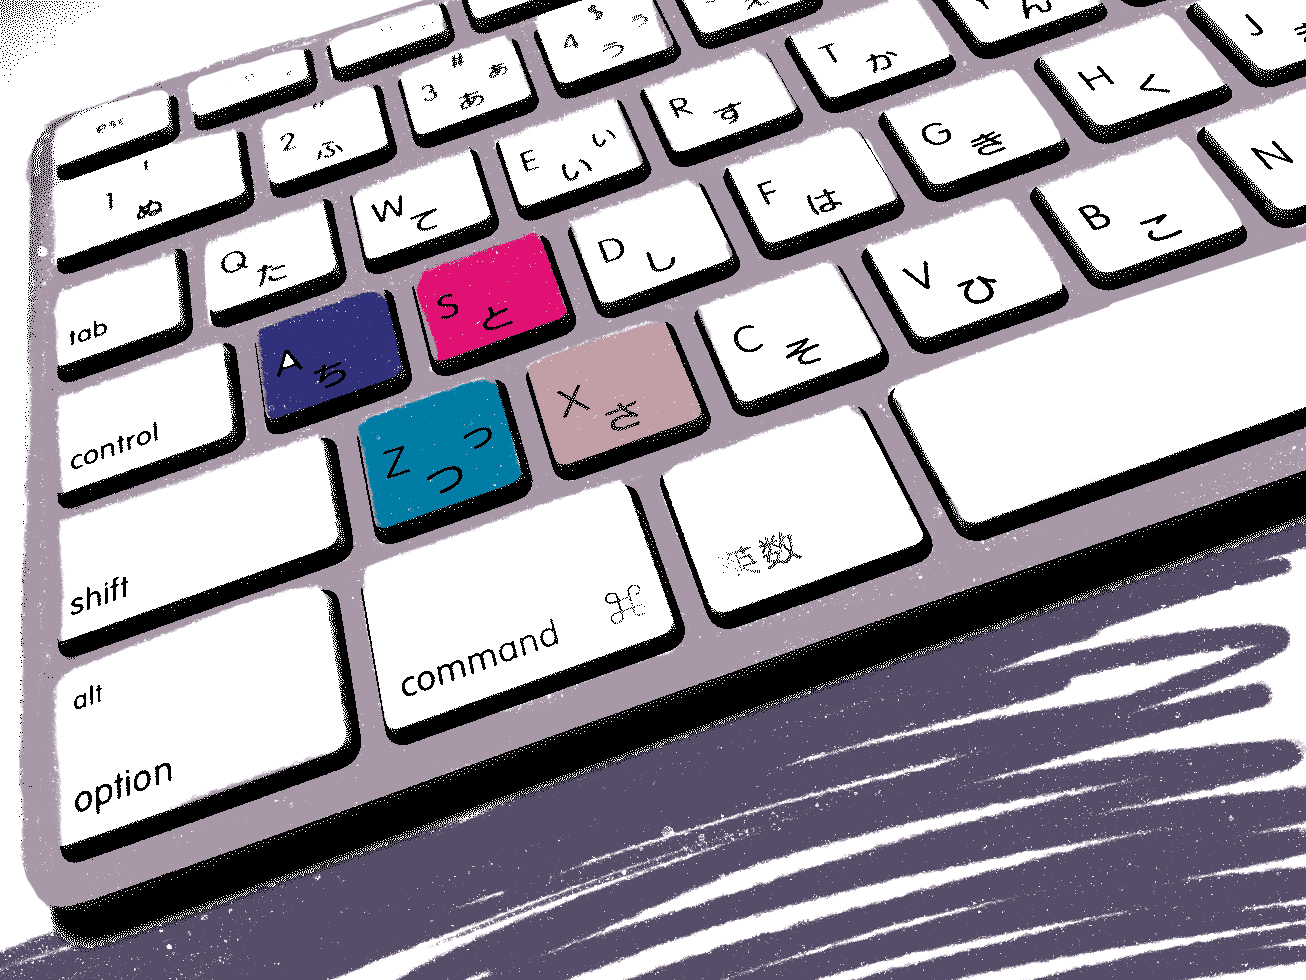 一般的なキーボードのイラスト